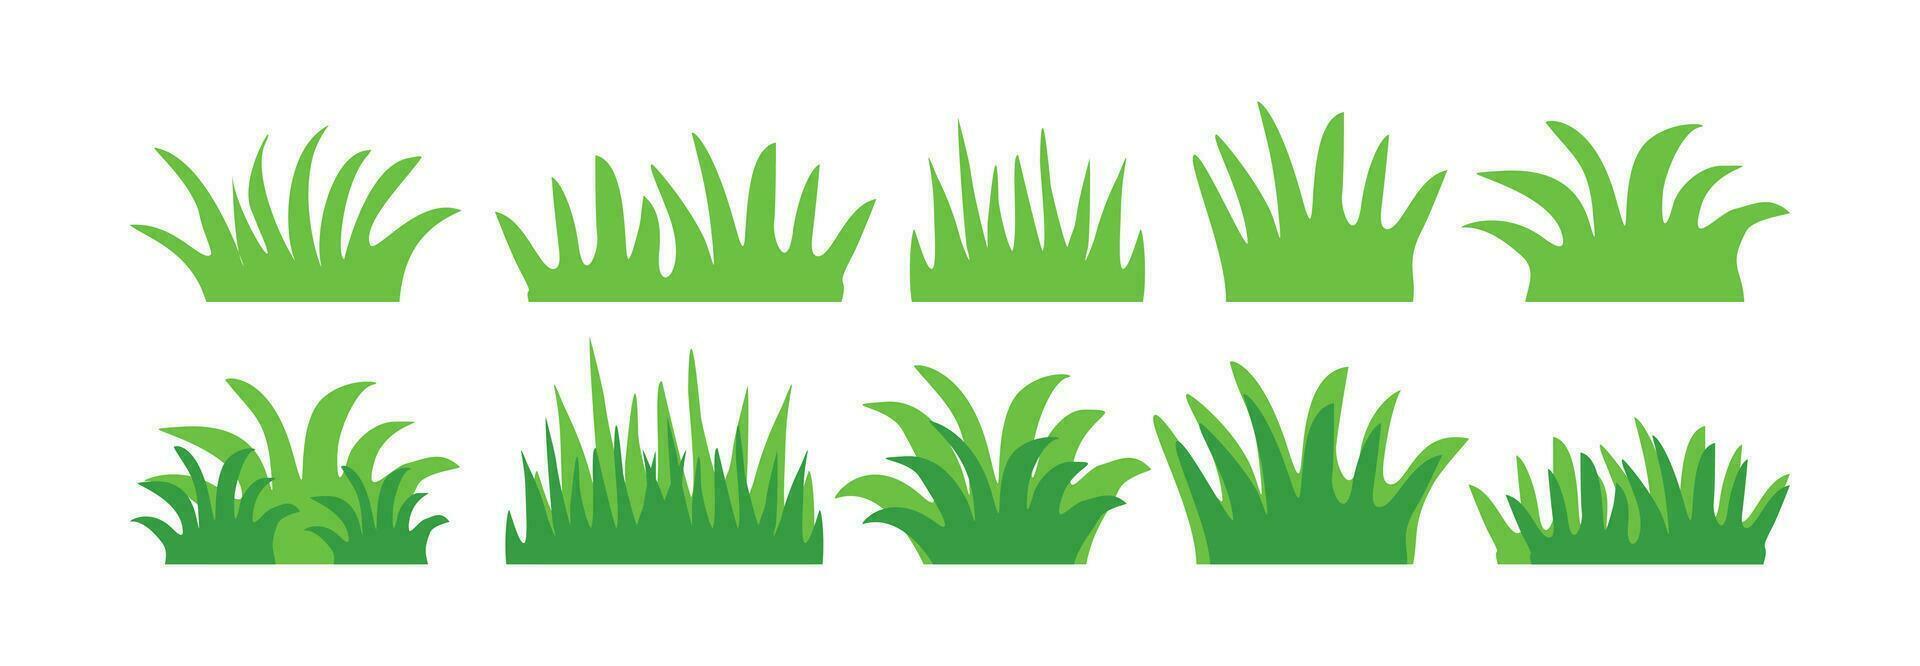 groen gras illustratie vector . gras element vector reeks